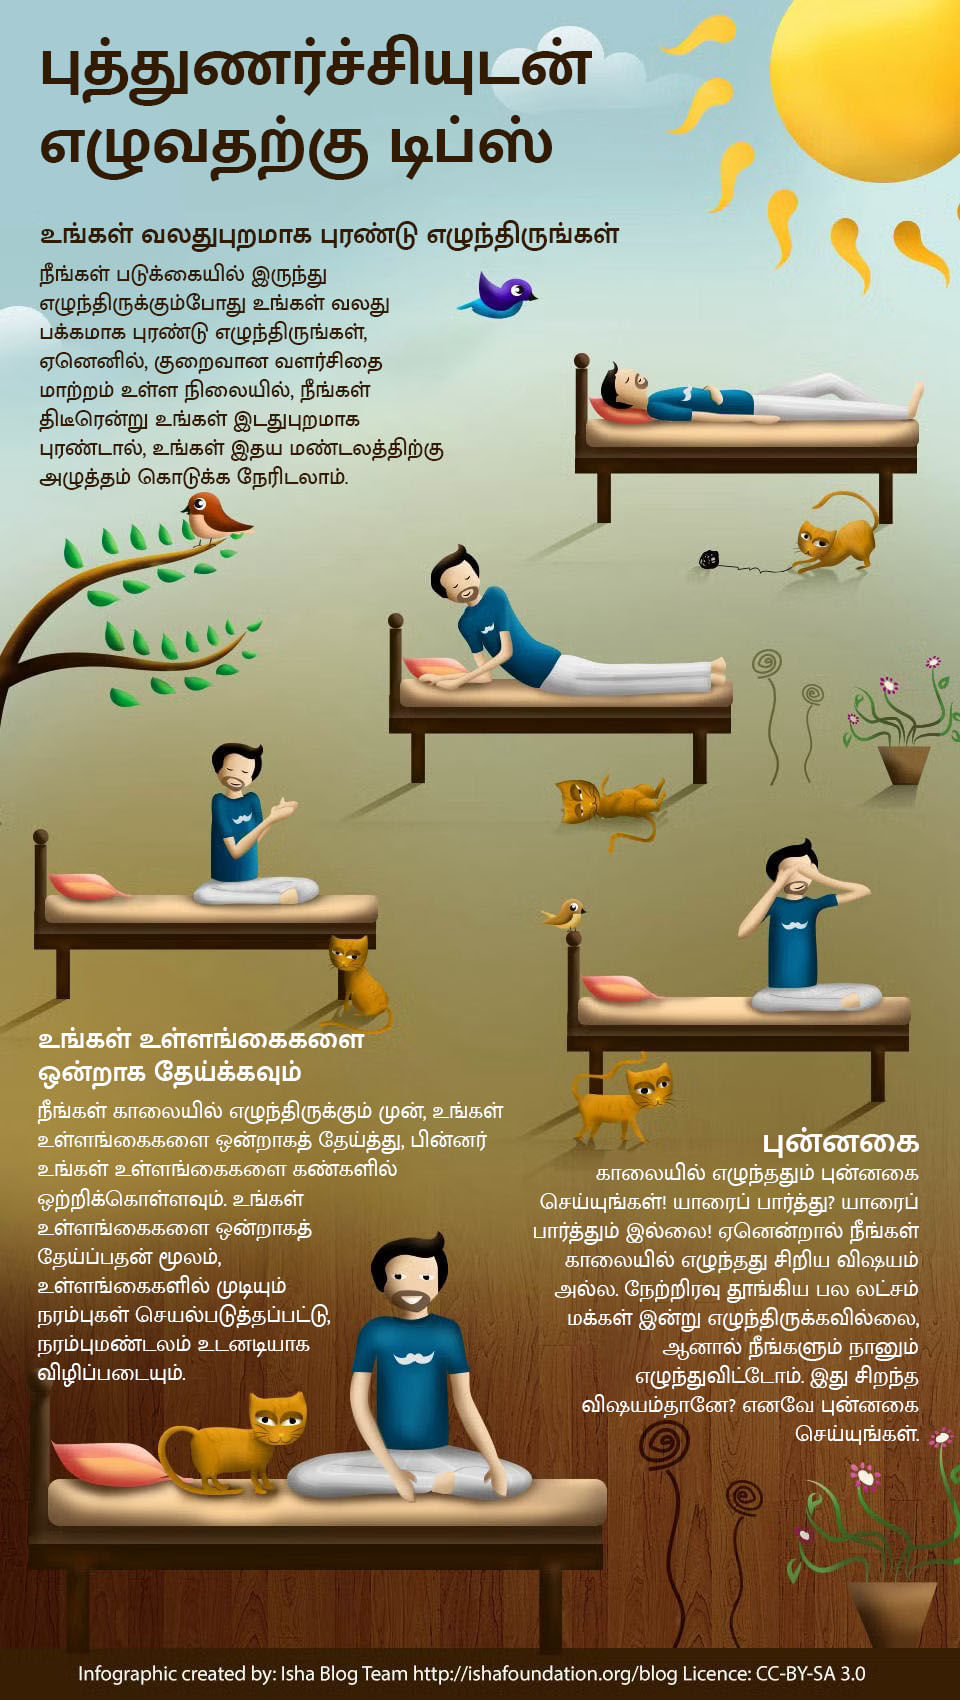 Tips to wake up well in tamil, புத்துணர்ச்சியுடன் எழுவதற்கு டிப்ஸ்